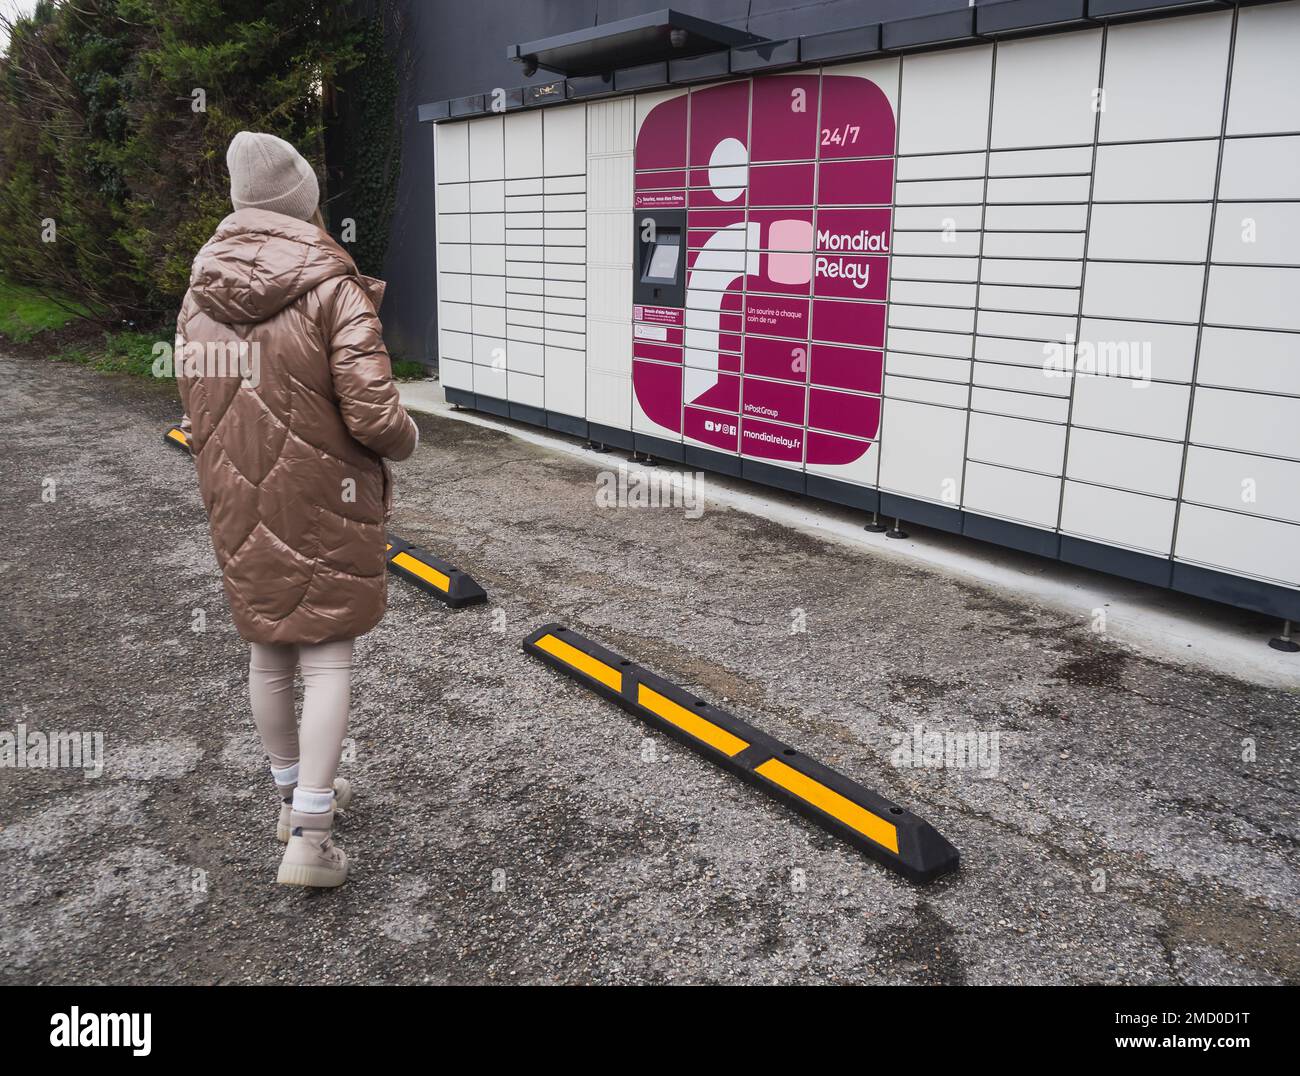 Loriol sur Drome, Frankreich - 14. Januar 2023: Abholung eines Pakets aus einem Mondial`Relay-Schließfach durch eine junge Frau. Schließfächer Mondial Relay. Pickup-Box. Stockfoto